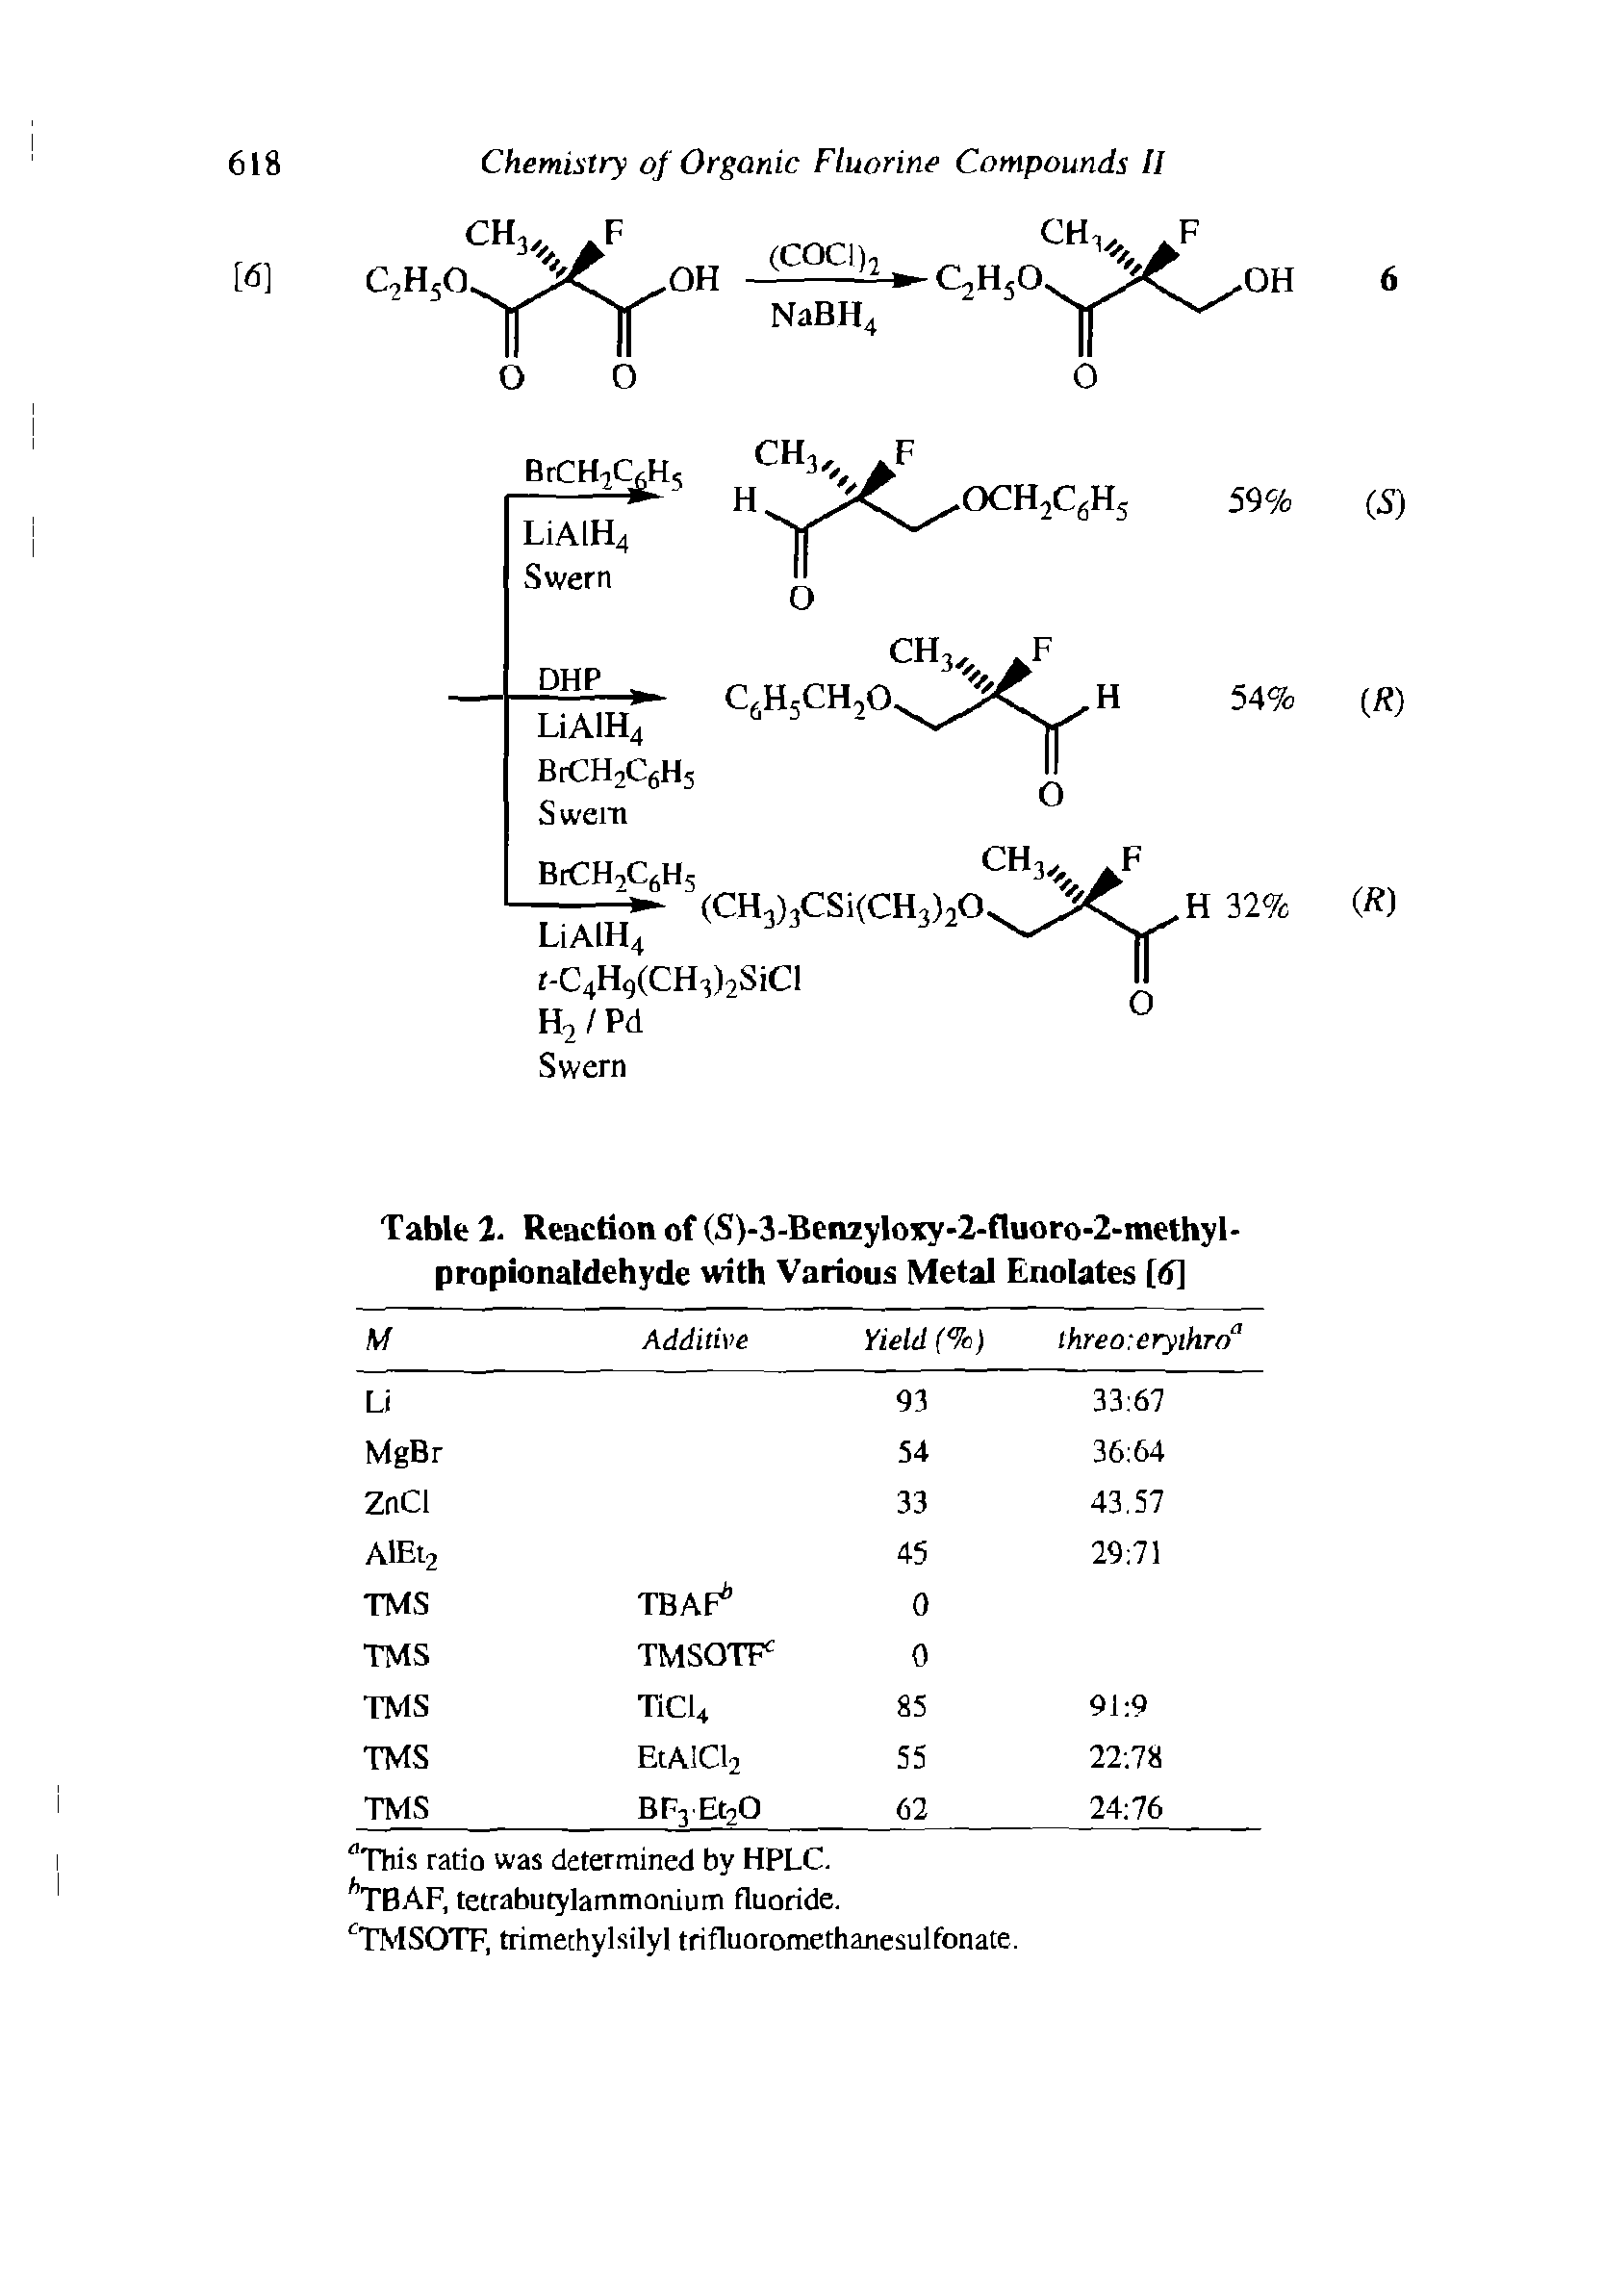 Table 2. Reaction of (S)-3-Ben2yloxy-2-fluoro-2-methyl-propionaldehyde with Various Metal Enolates [d]...